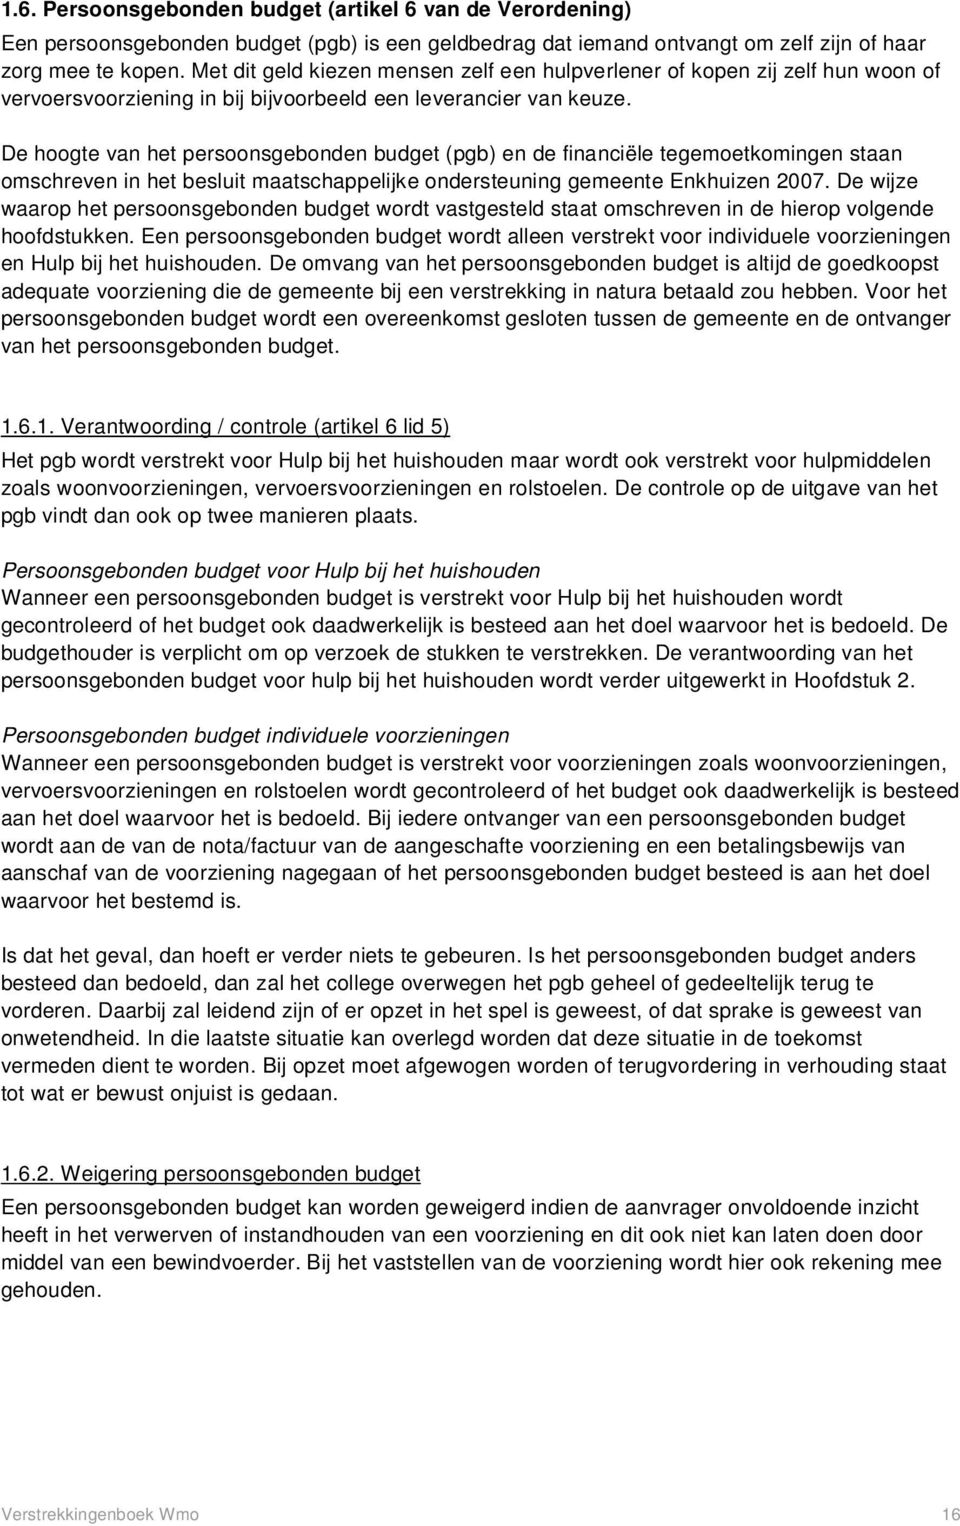 De hoogte van het persoonsgebonden budget (pgb) en de financiële tegemoetkomingen staan omschreven in het besluit maatschappelijke ondersteuning gemeente Enkhuizen 2007.